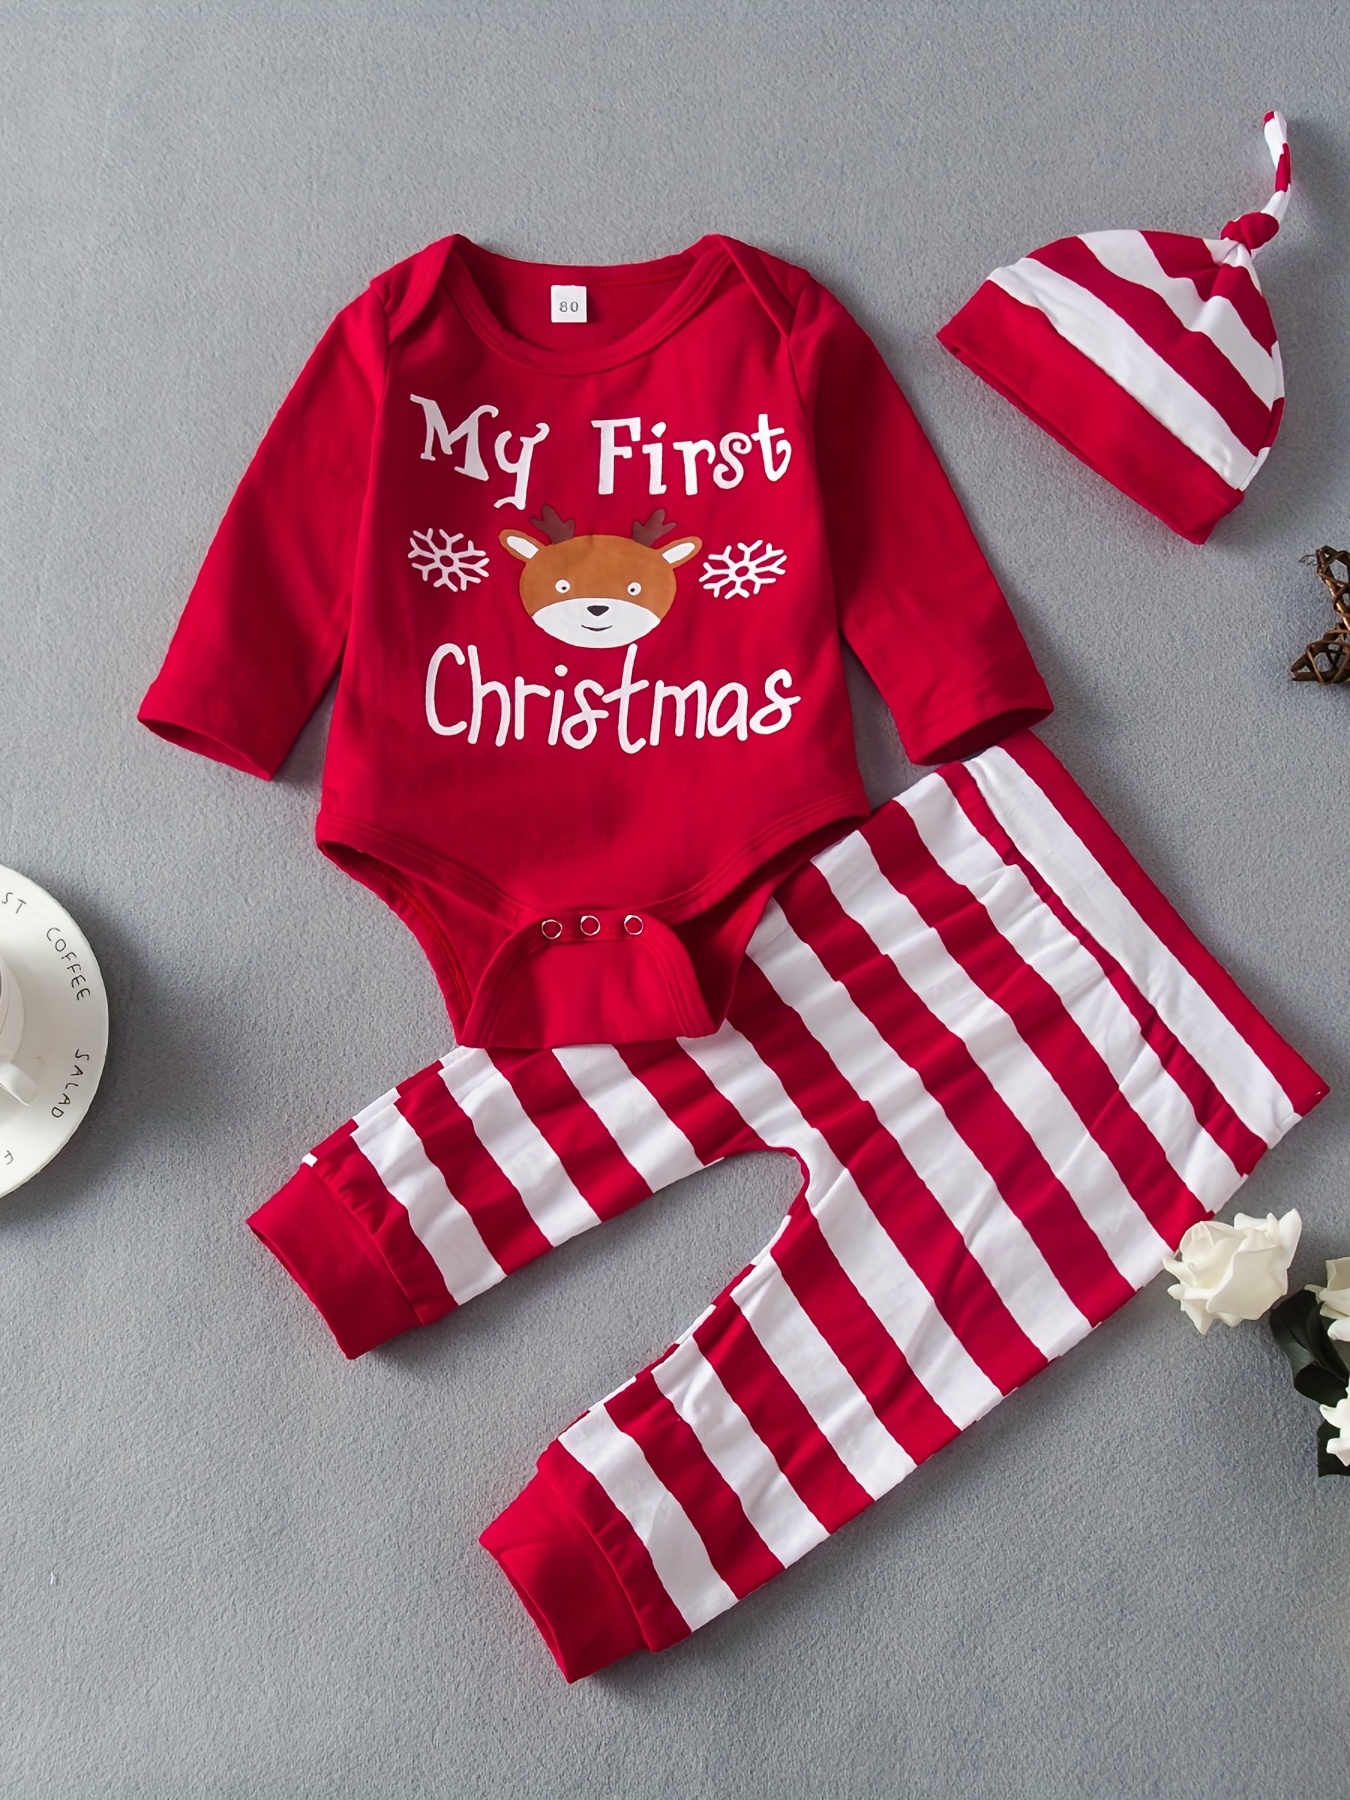 Automne Hiver Bébé Filles Garçons Vêtements Pour Nouveau-Né Bébé Rompers  Pour Bébé Combinaison Combinaison De Noël Costume Vêtements Bébé